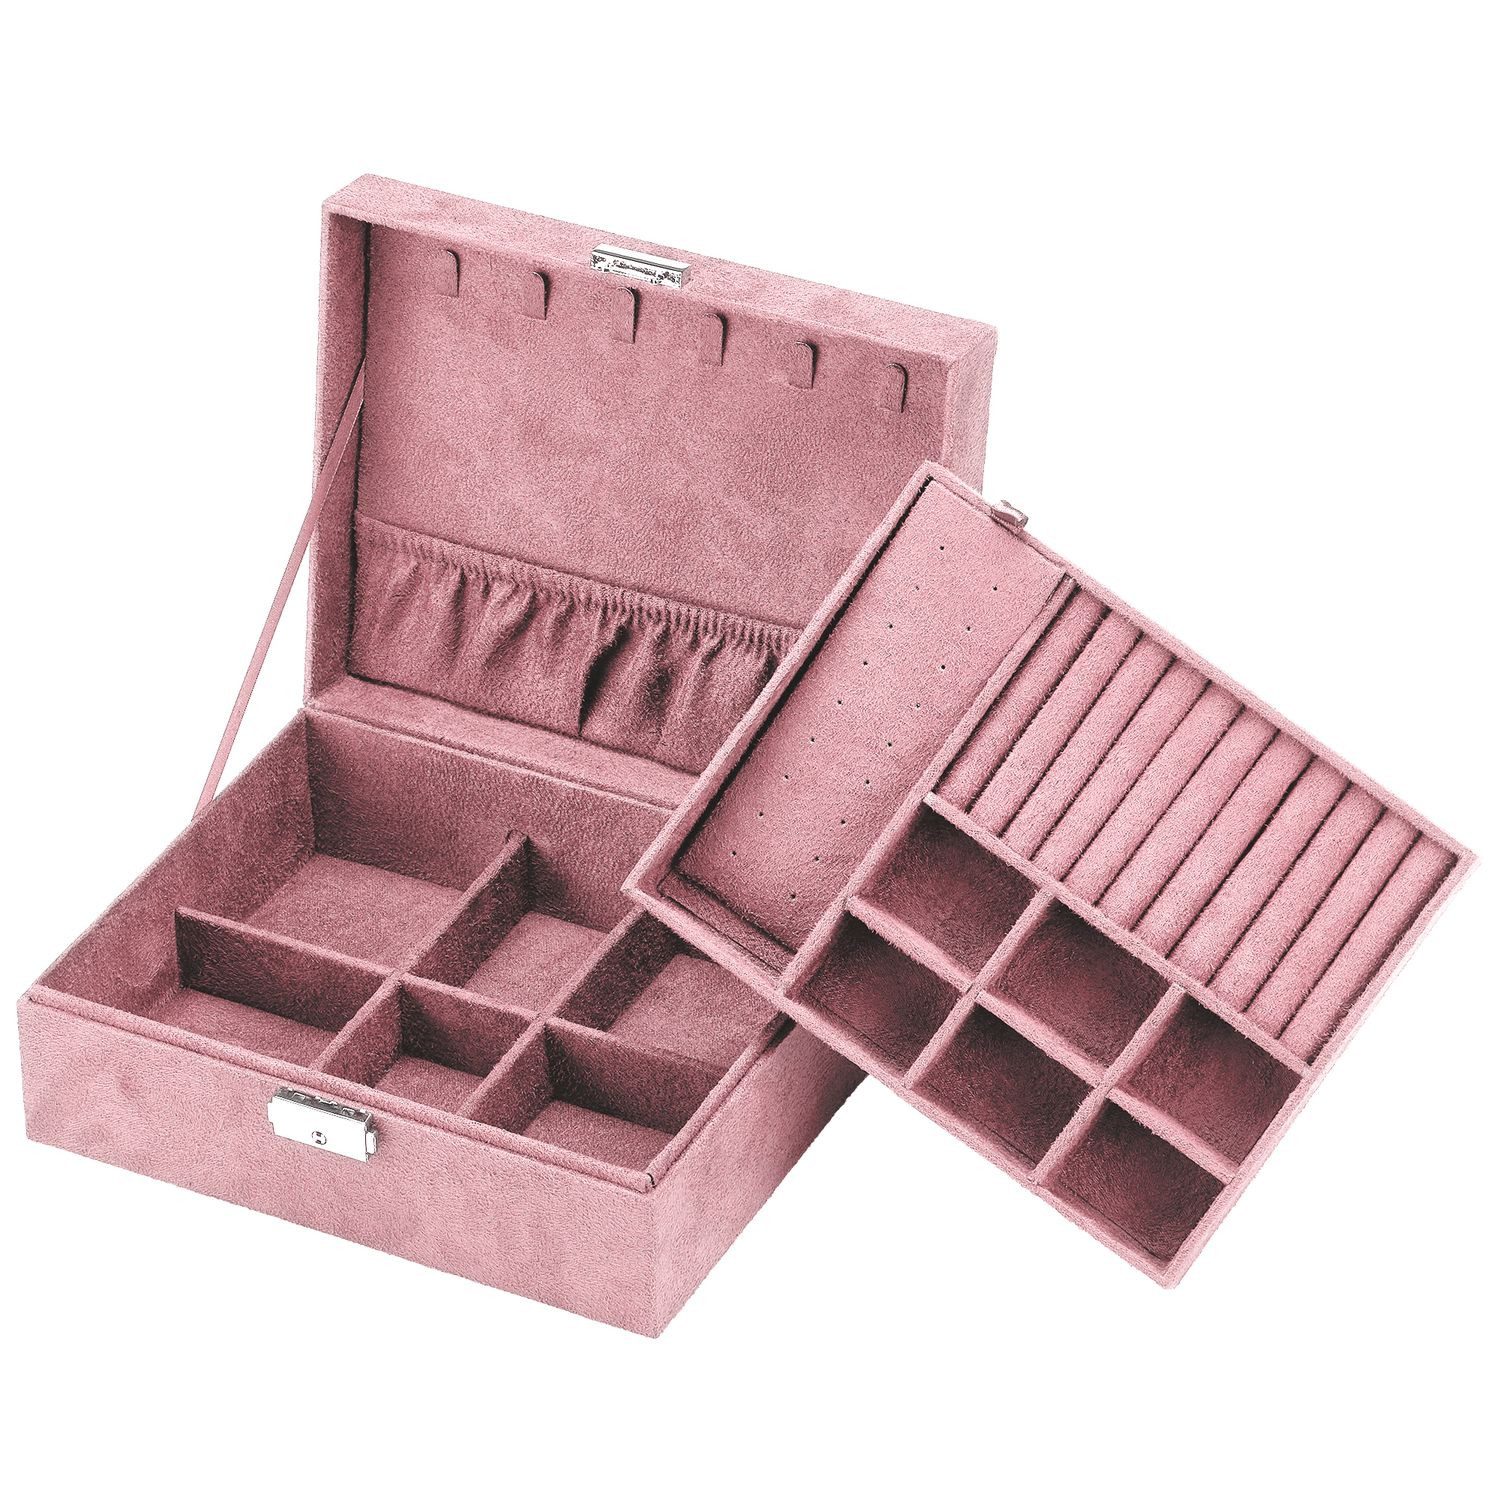 Intirilife Schmuckkasten (hochwertige Juwelenbox Schmuckschatulle Accessoirekästchen in Rosa, 1 St), Zum Aufbewahren von Ringen Ketten Uhren Ohrringen und Armbändern